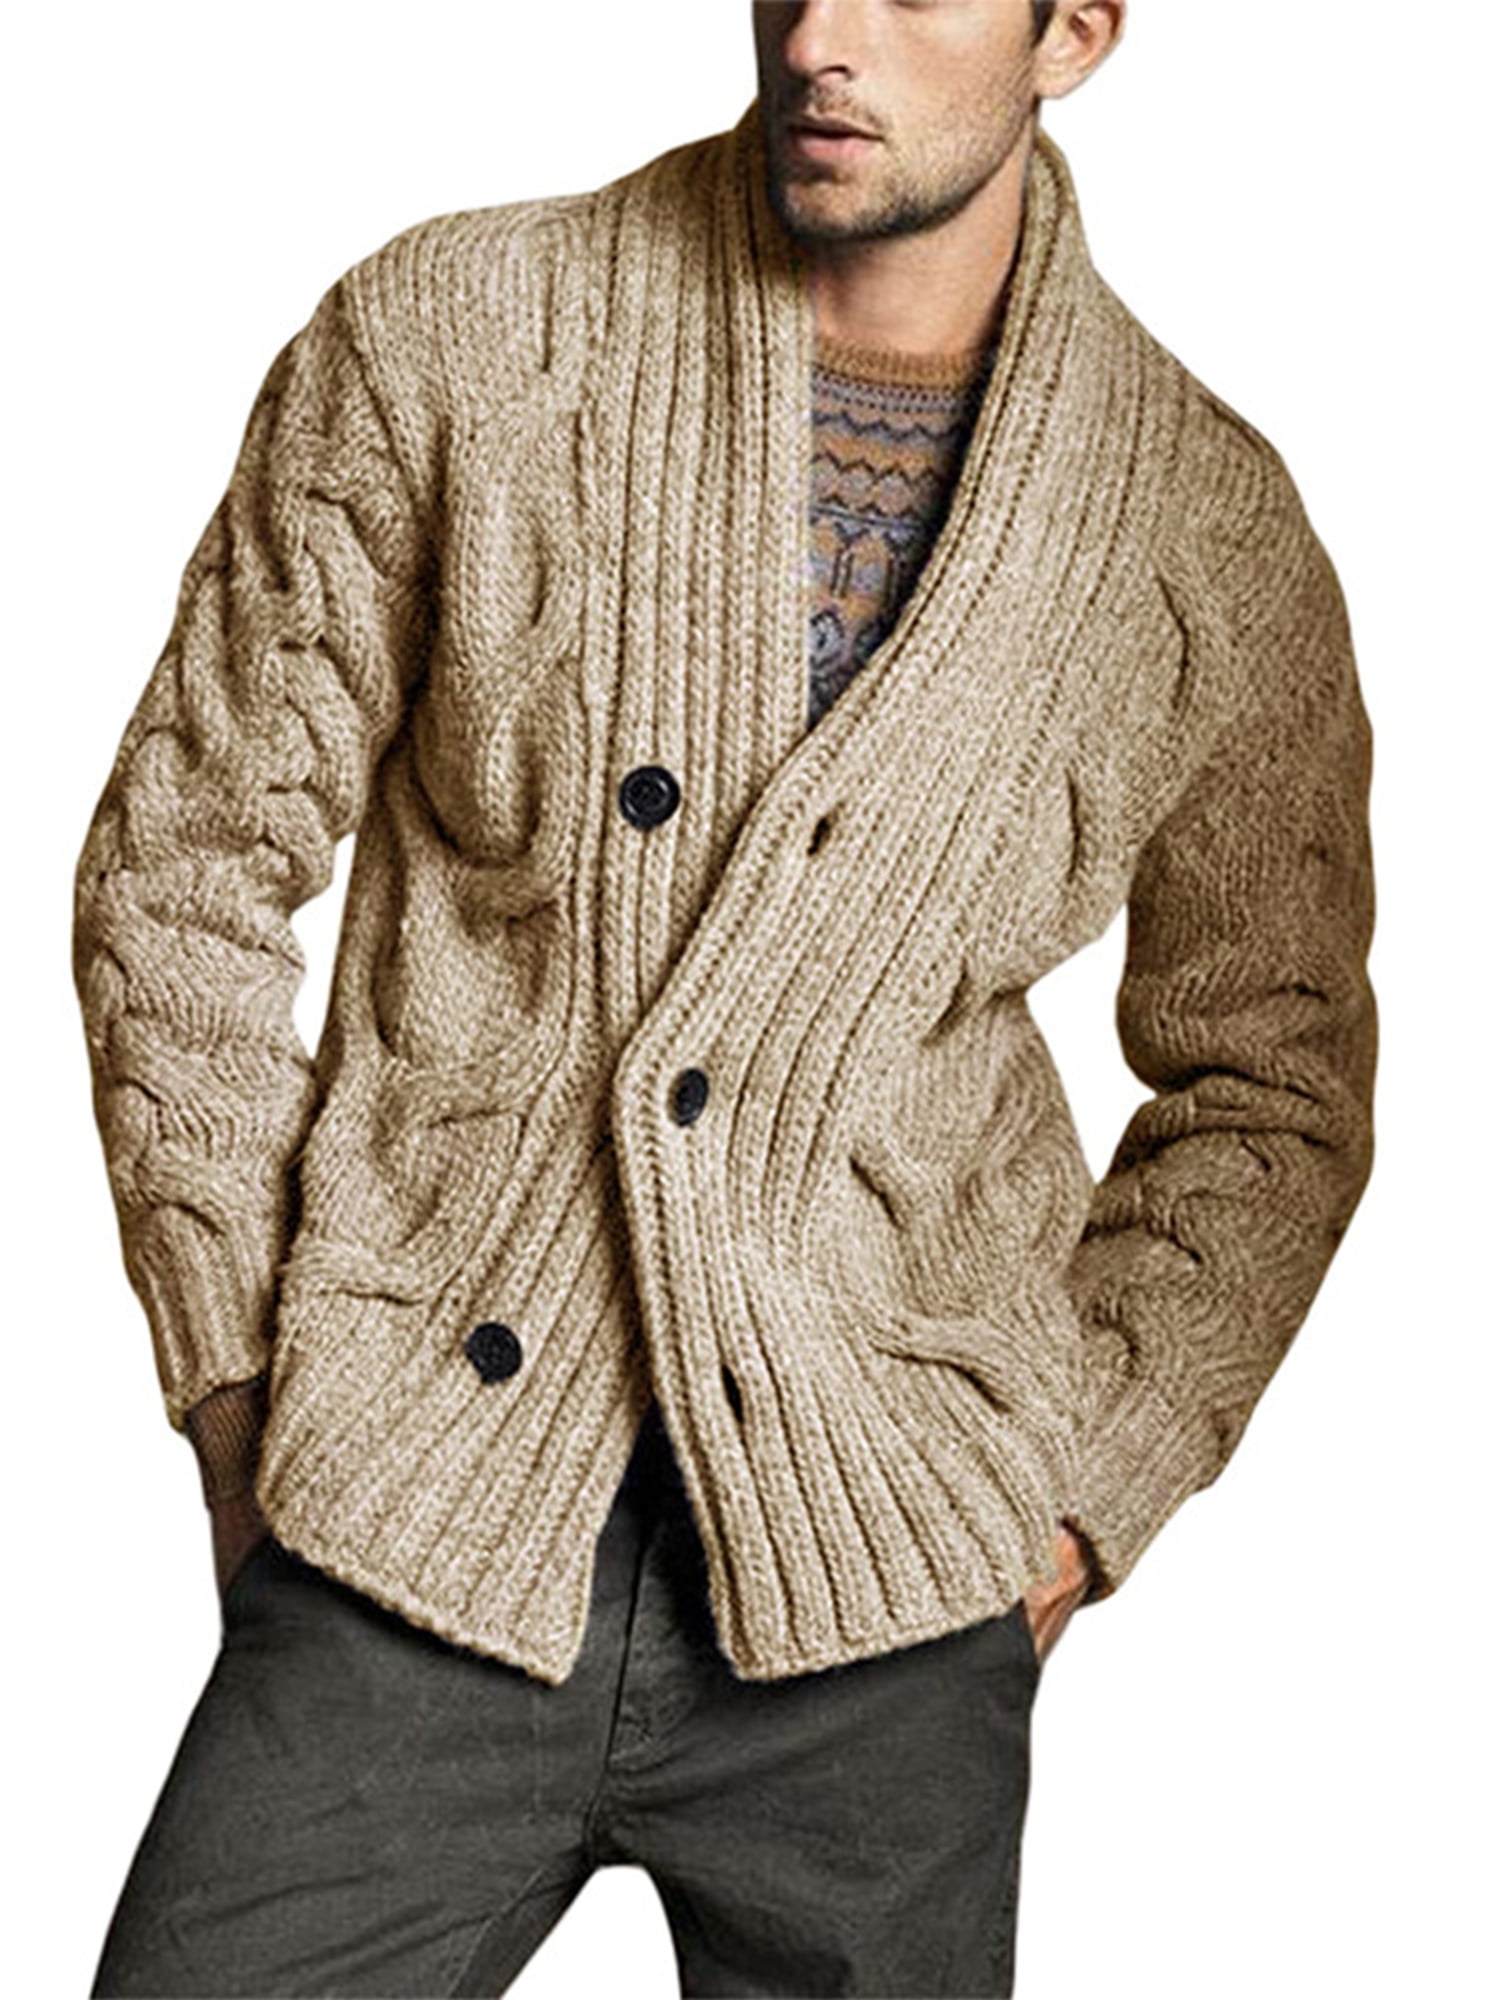 Men Knit Cardigan Sweater Winter Slim Casual Jacket Coat Outwear Top Long Sleeve 